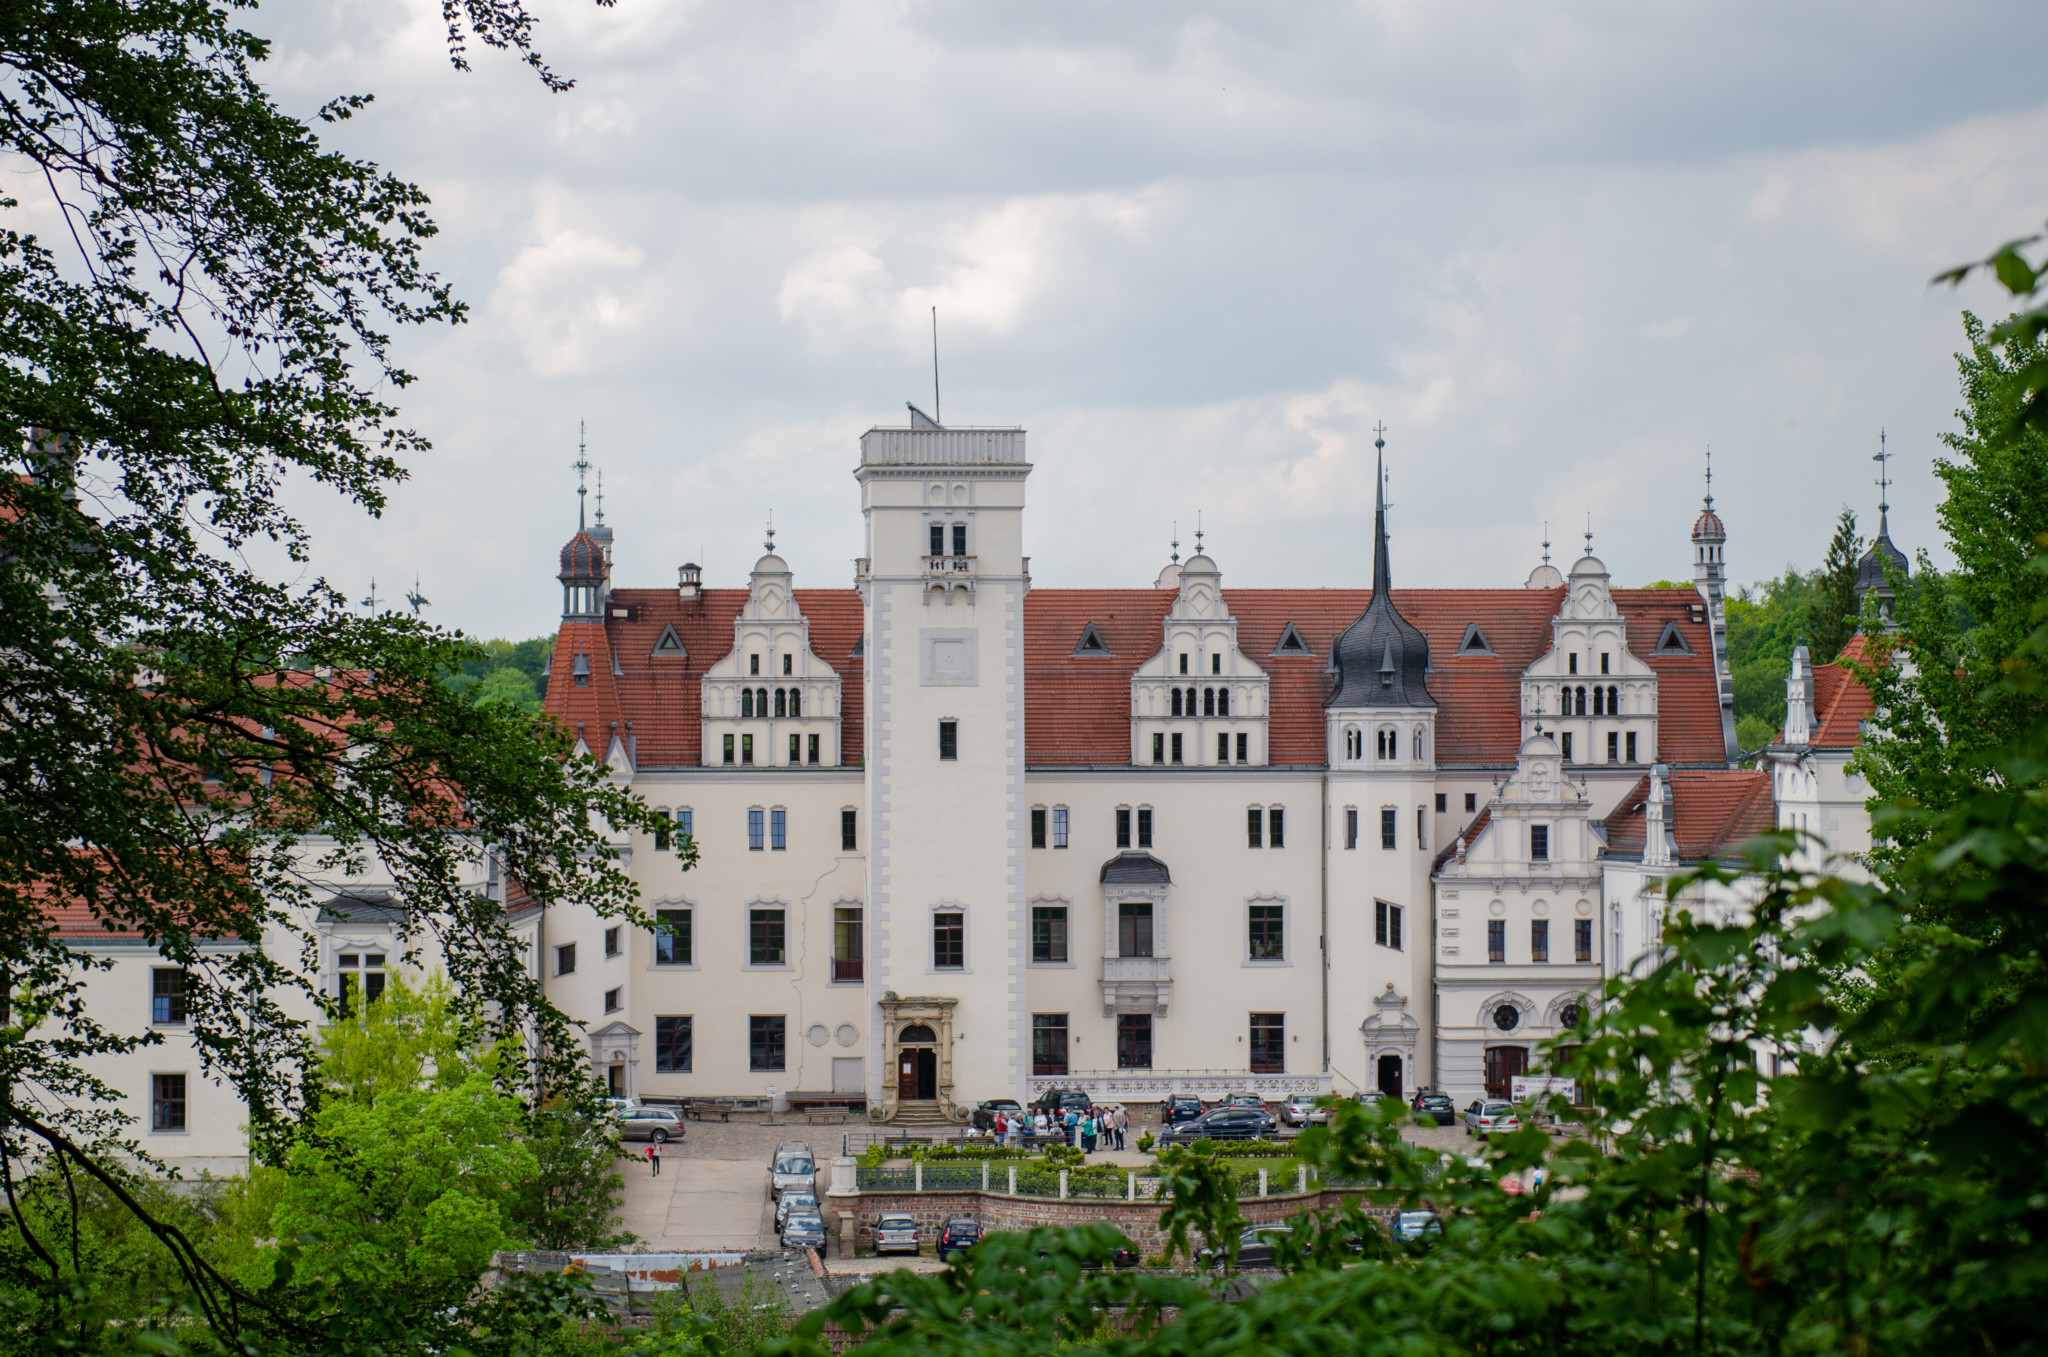 Zu den Sehenswürdigkeiten in der Uckermark zählt ganz klar das Schloss Boitzenburg